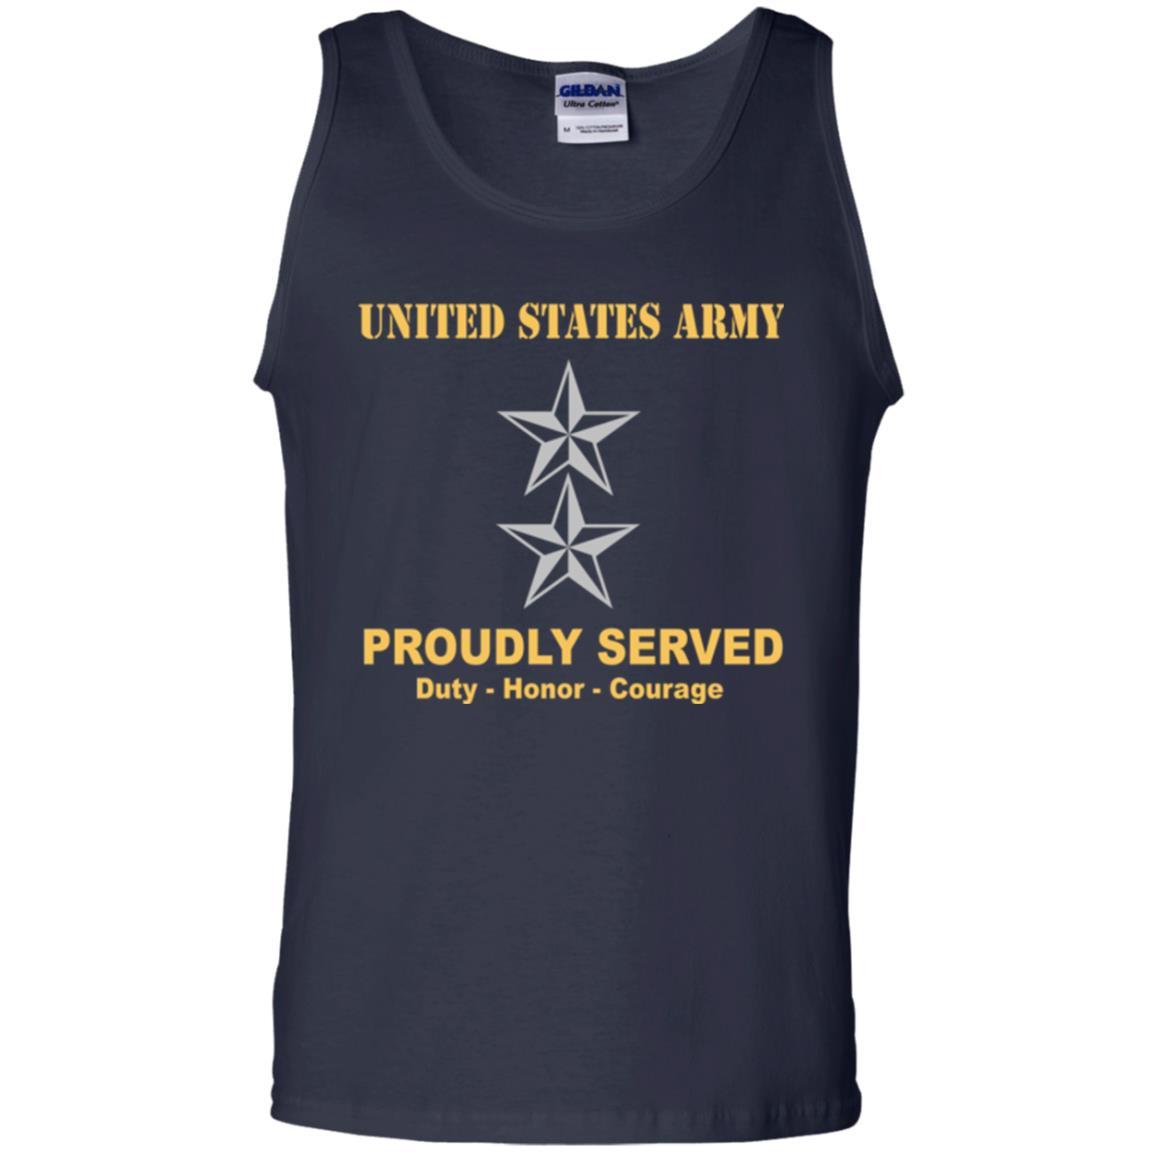 US Army O-8 Major General O8 MG General Officer Ranks Men Front Shirt US Army Rank-TShirt-Army-Veterans Nation